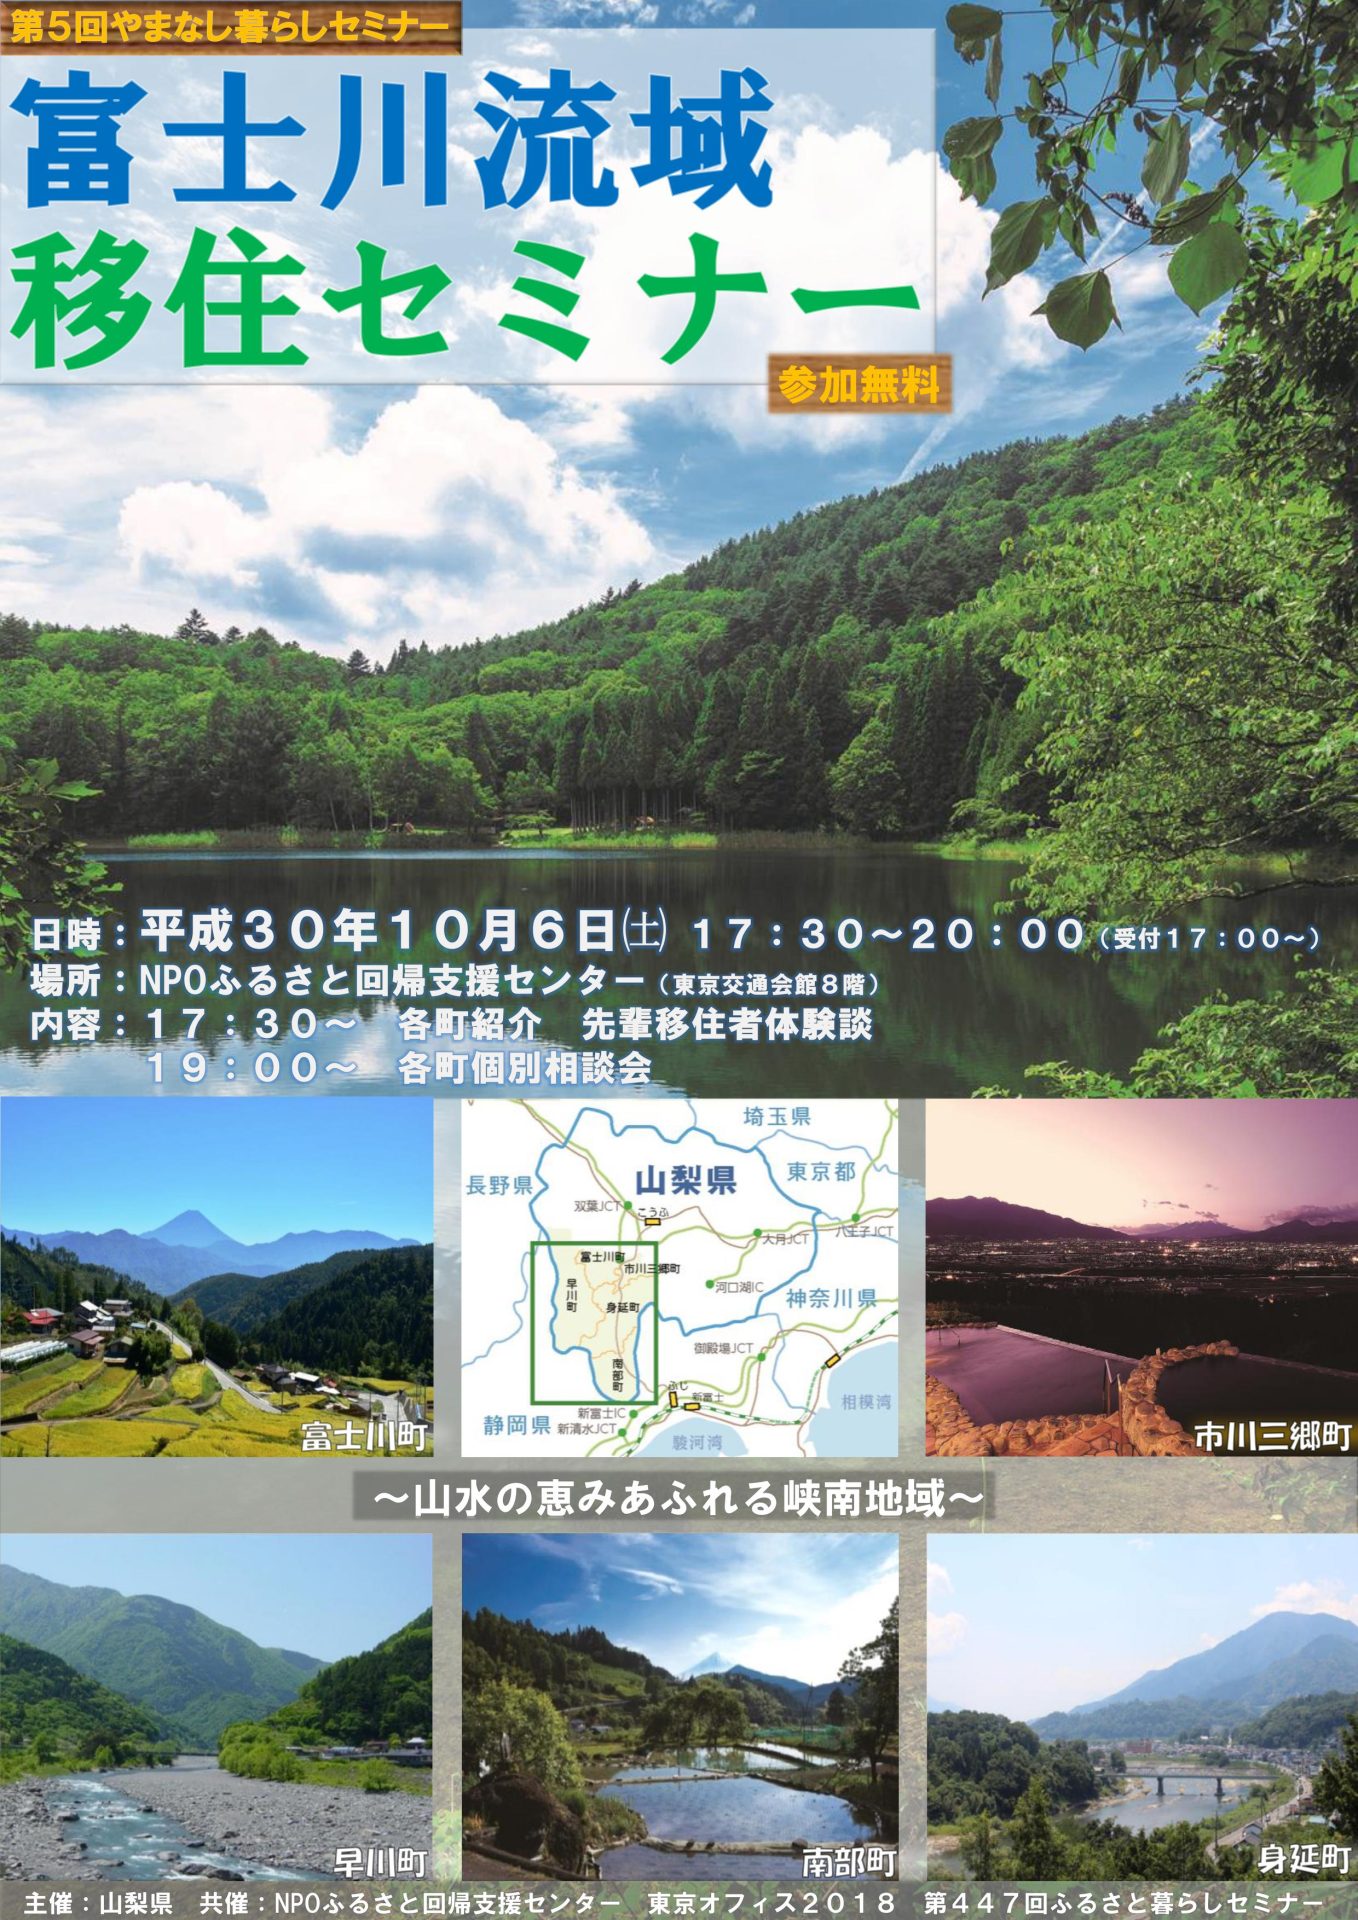 第5回やまなし暮らしセミナー　「富士川流域移住セミナー」 | 移住関連イベント情報